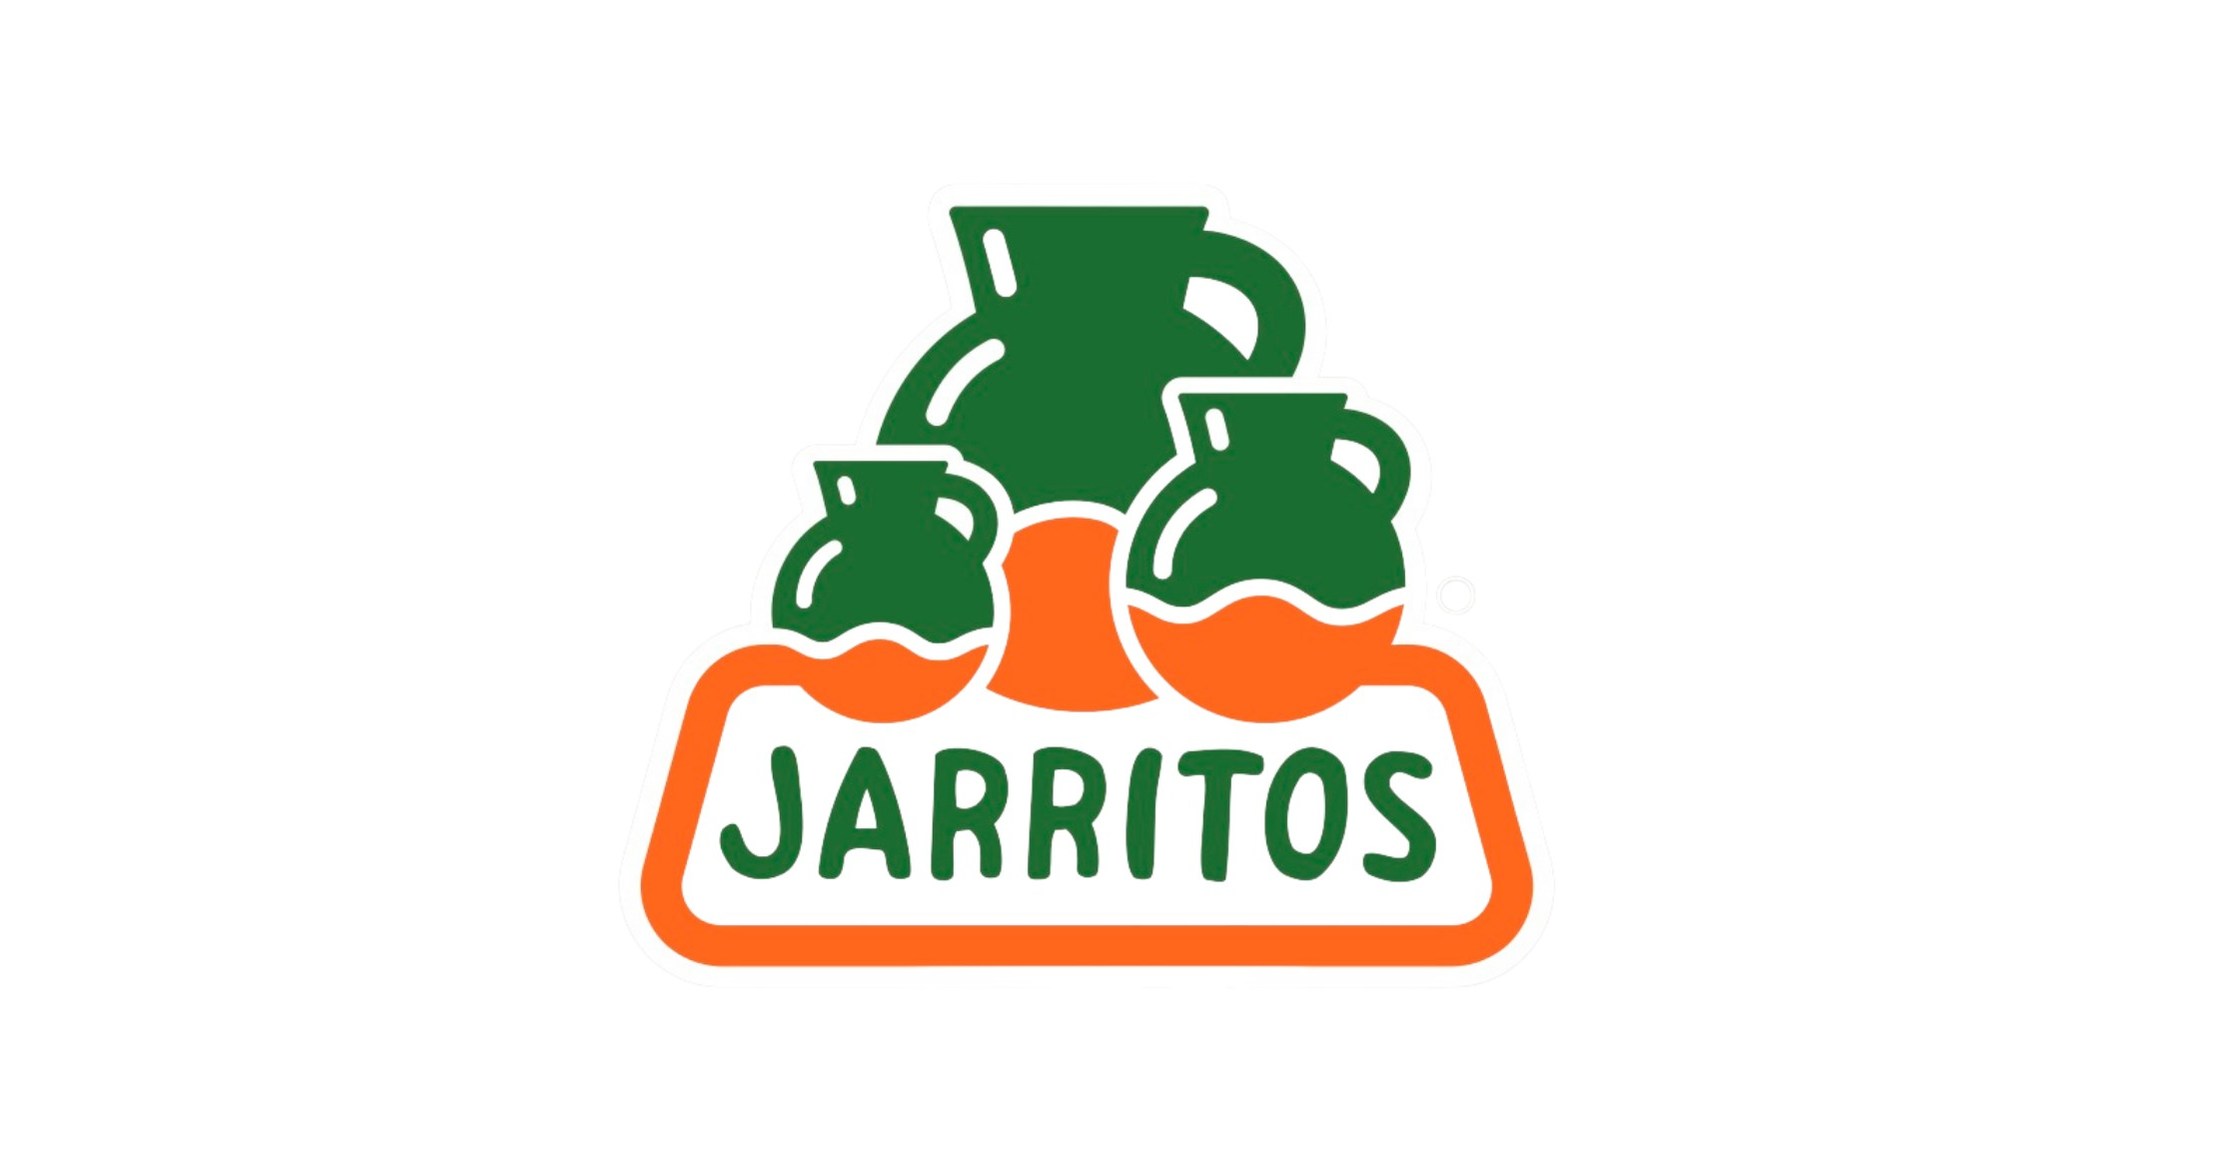 Jarritos Mexican Soda lanza el nuevo concurso JARRITODOS Artist Award para defender a diversos artistas y creativos